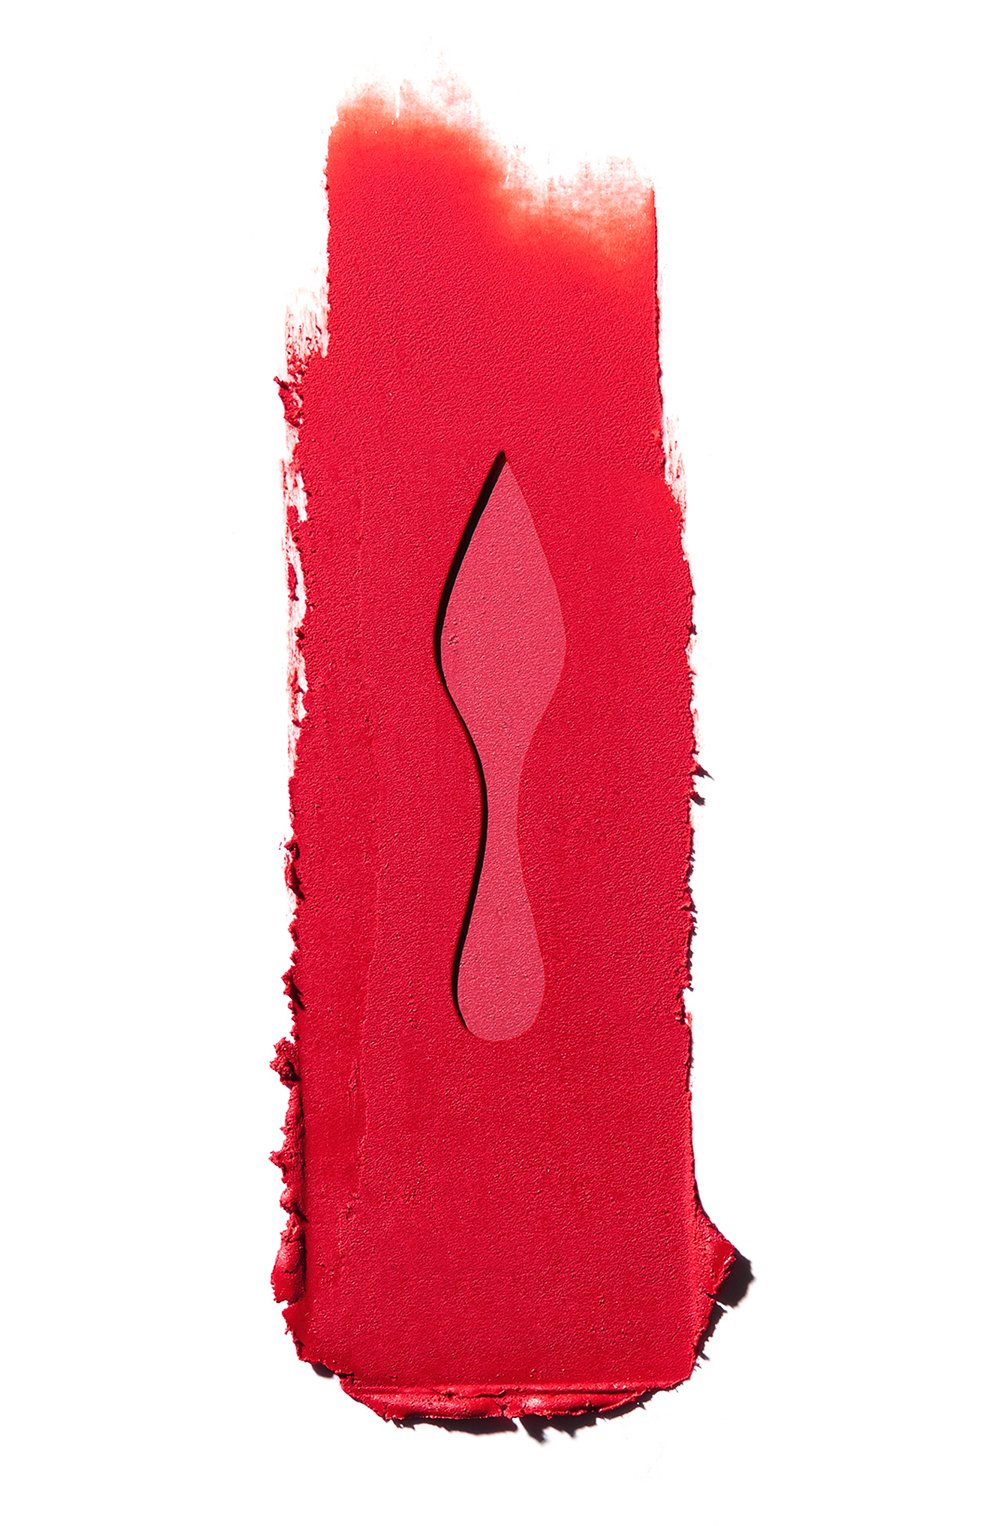 Матовая помада для губ rouge louboutin velvet matte, оттенок red dramadouce CHRISTIAN LOUBOUTIN  цвета, арт. 8435415068772 | Фото 2 (Финишное покрытие: Матовый)